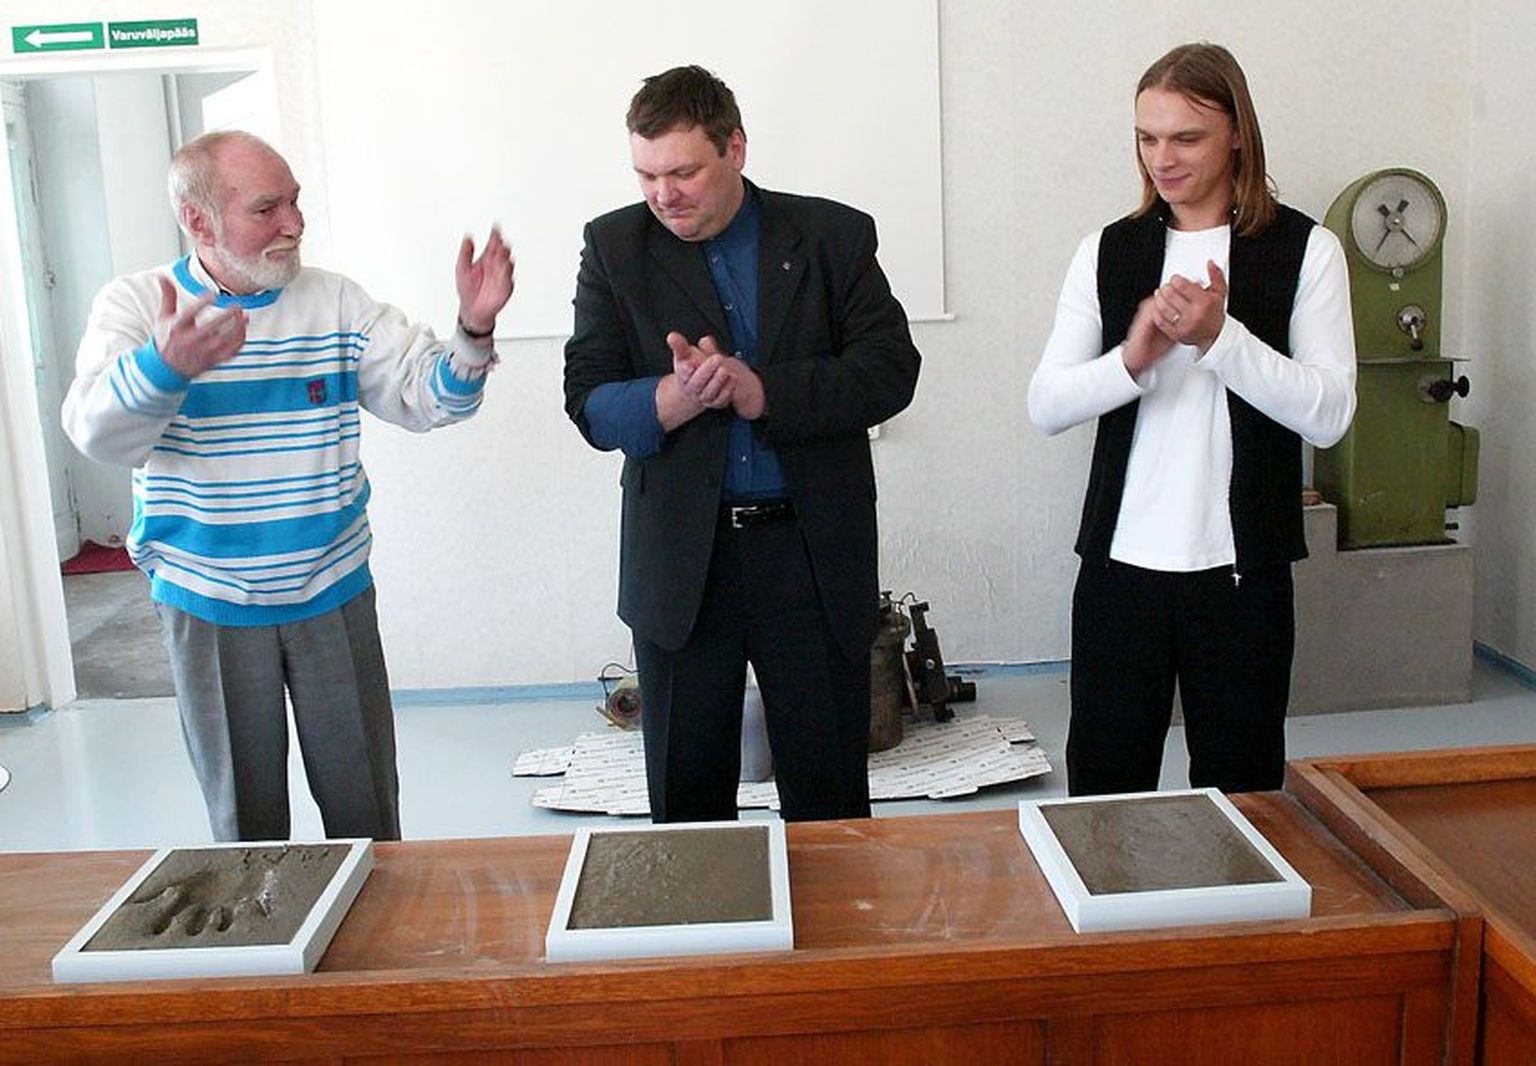 Läinud aasta aprillis vajutas Mikk Mikiver (vasakul) Kunda tsemendimuuseumis oma käejälje kivisse. Temaga koos tegid seda Riigikogu liige Marko Pomerants ja rokkmuusik Tanel Padar.